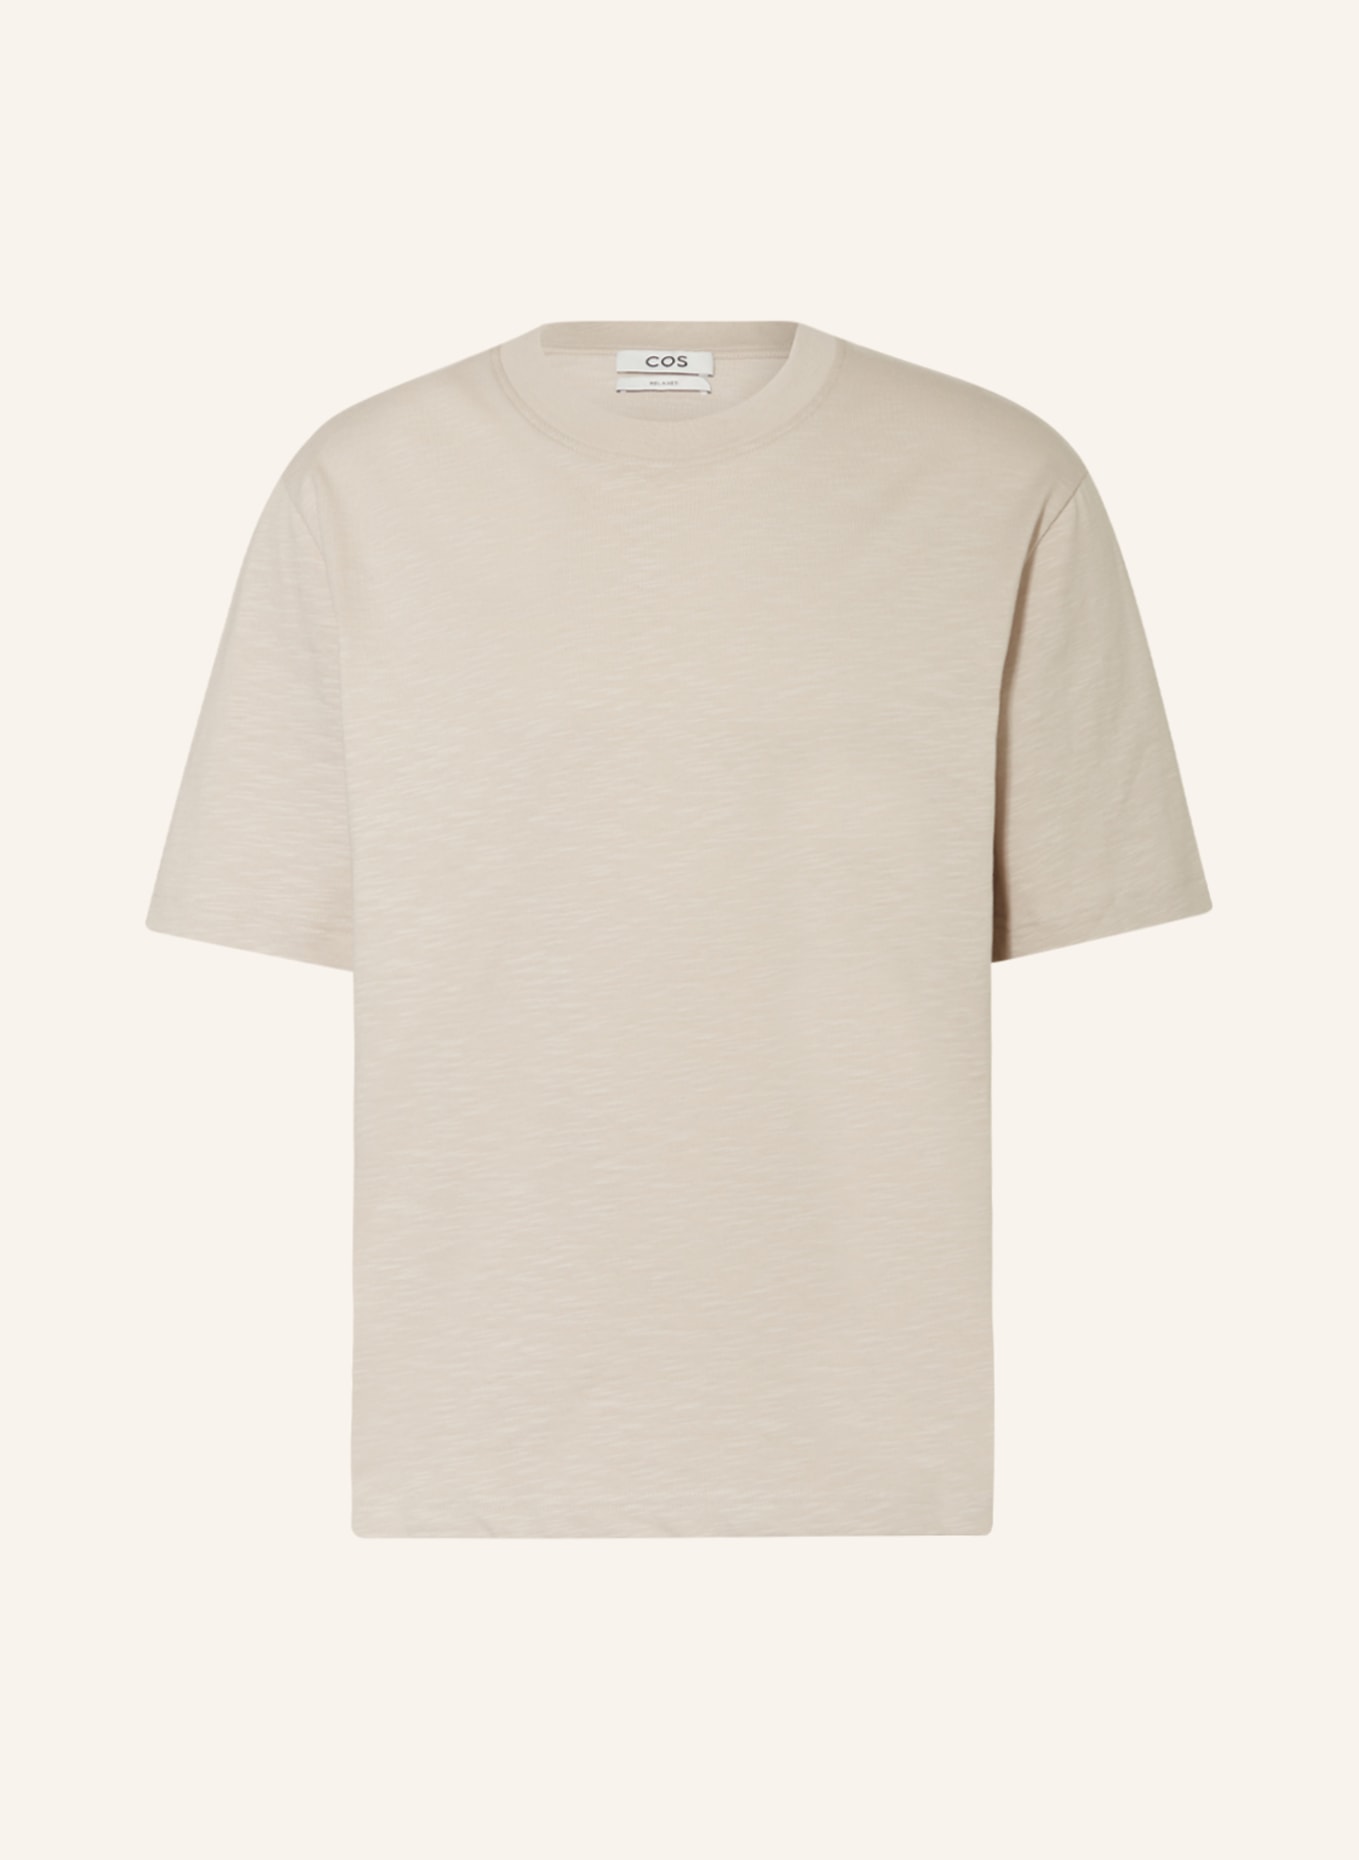 COS T-shirt, Color: BEIGE (Image 1)